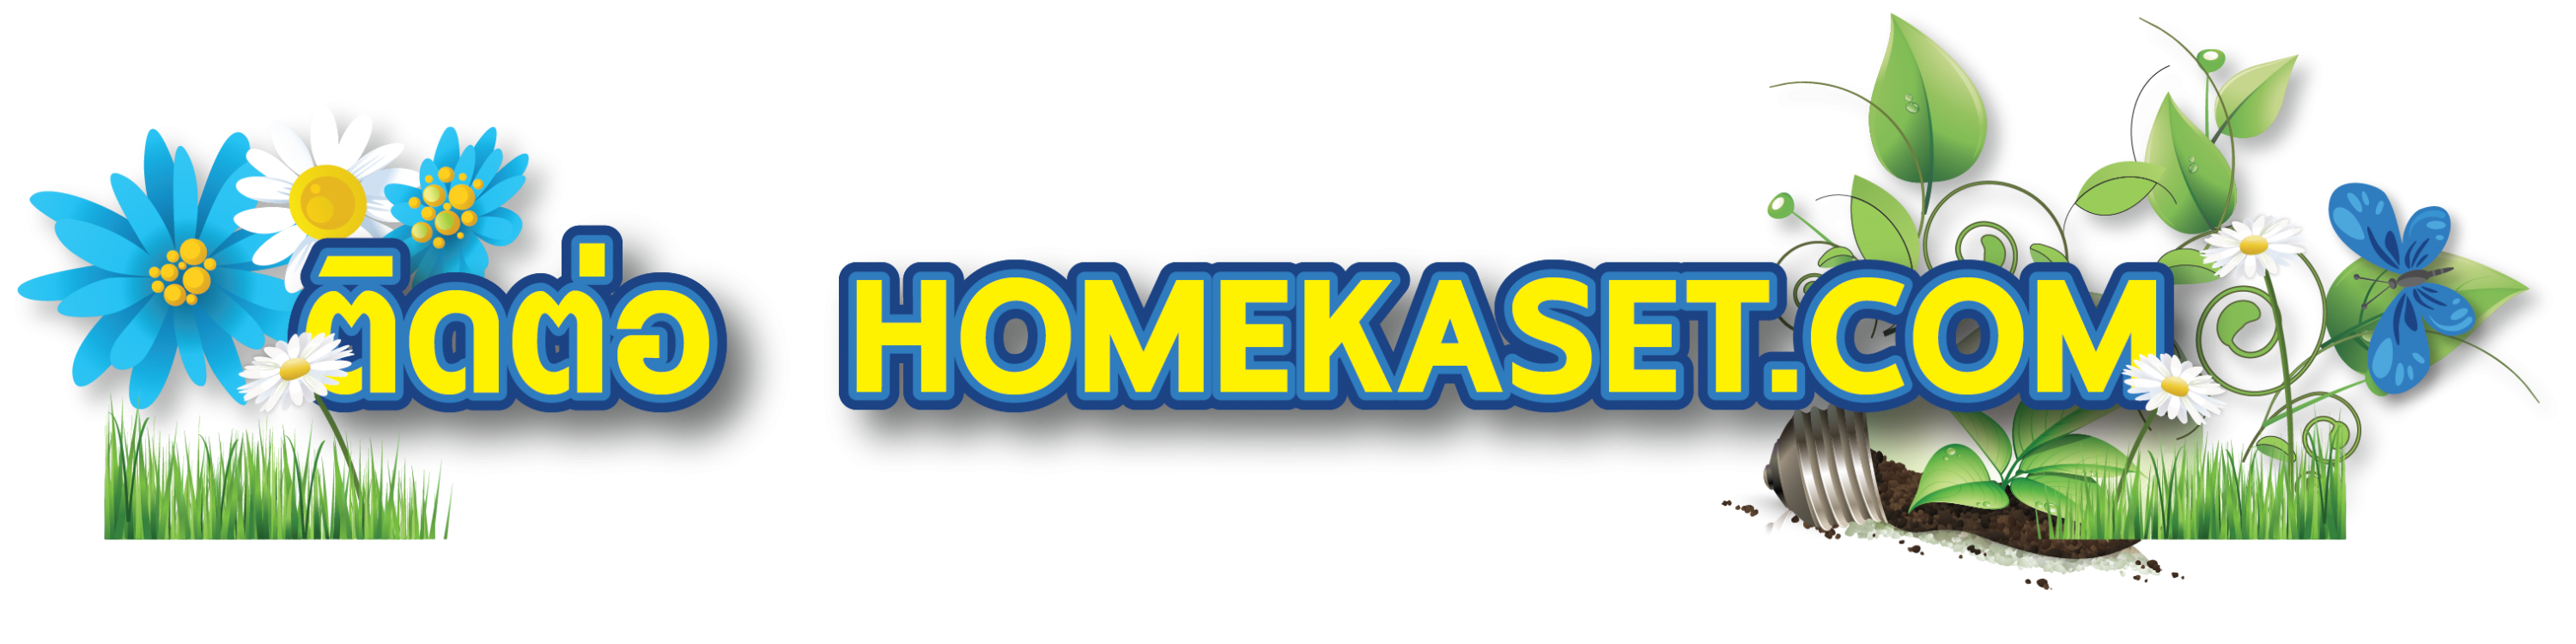 ติดต่อ Homekaset.com